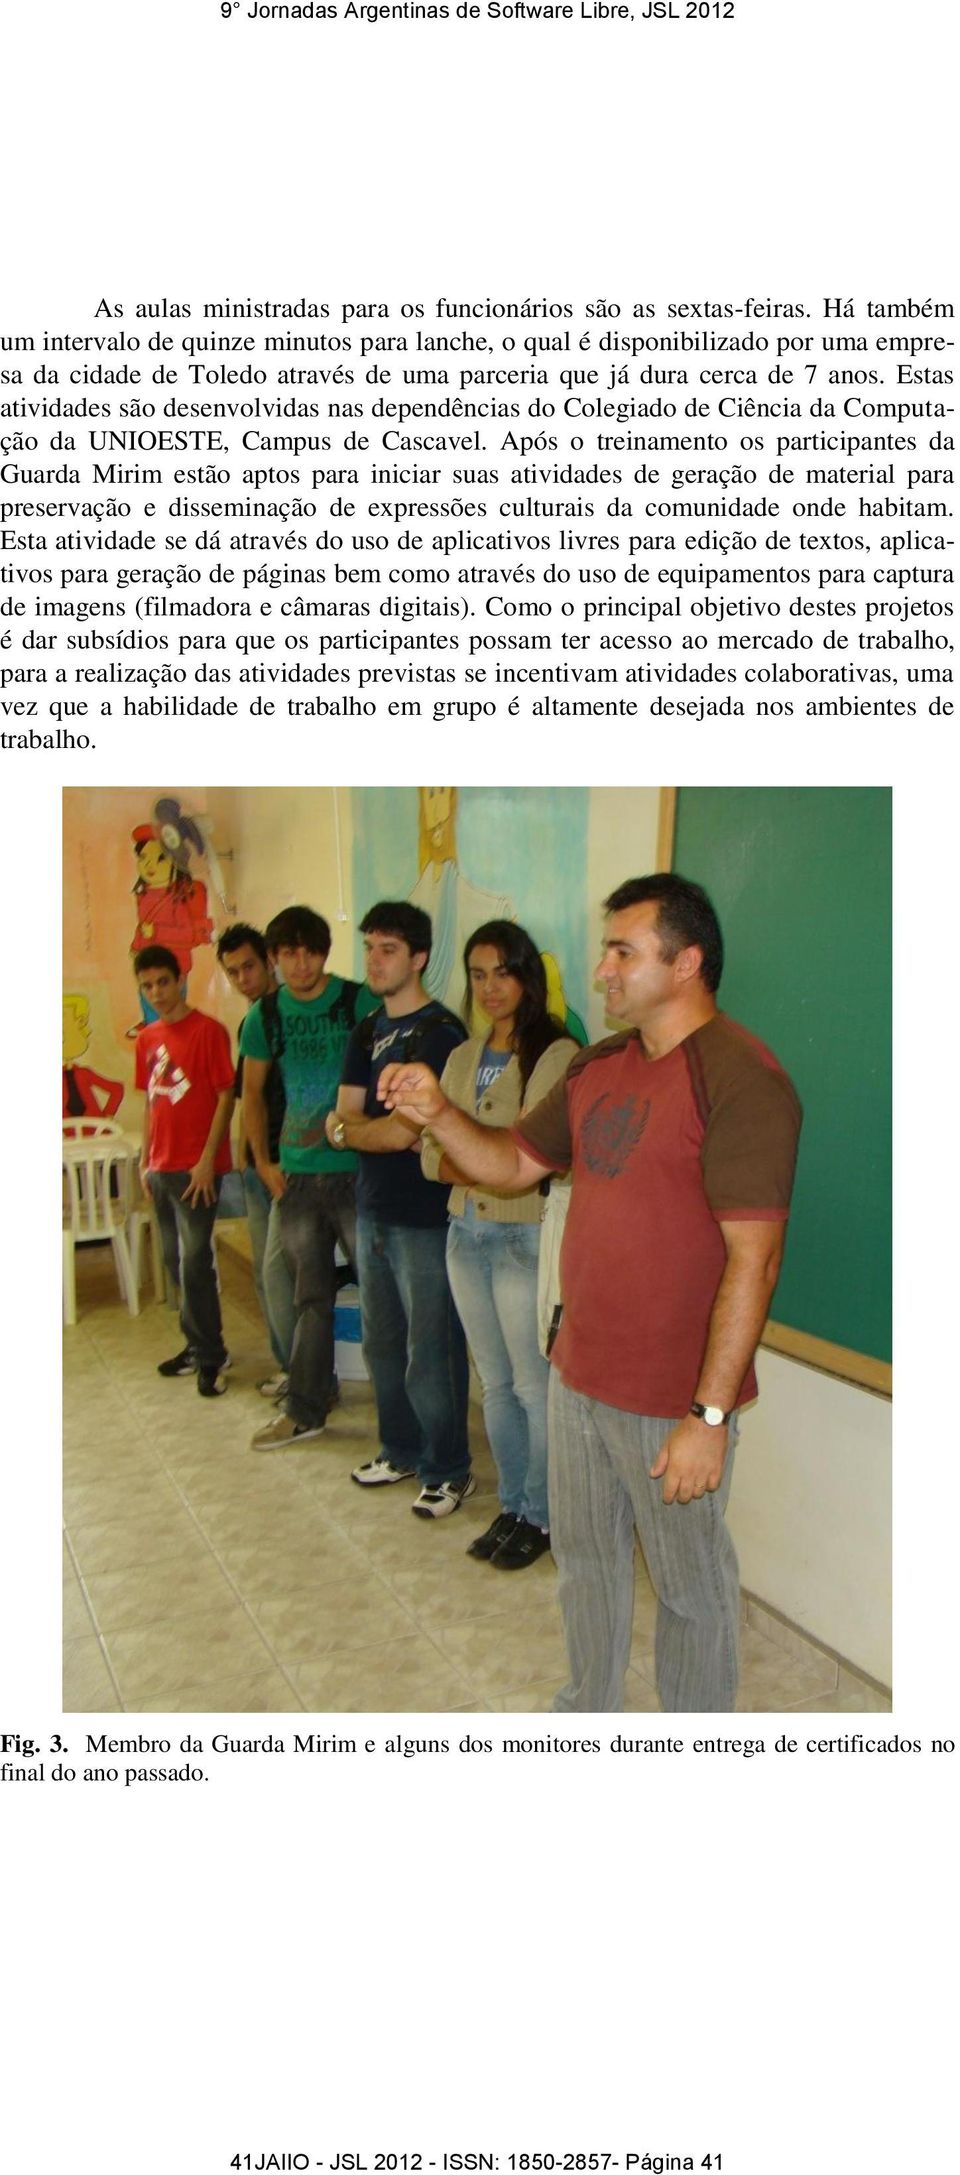 Estas atividades são desenvolvidas nas dependências do Colegiado de Ciência da Computação da UNIOESTE, Campus de Cascavel.